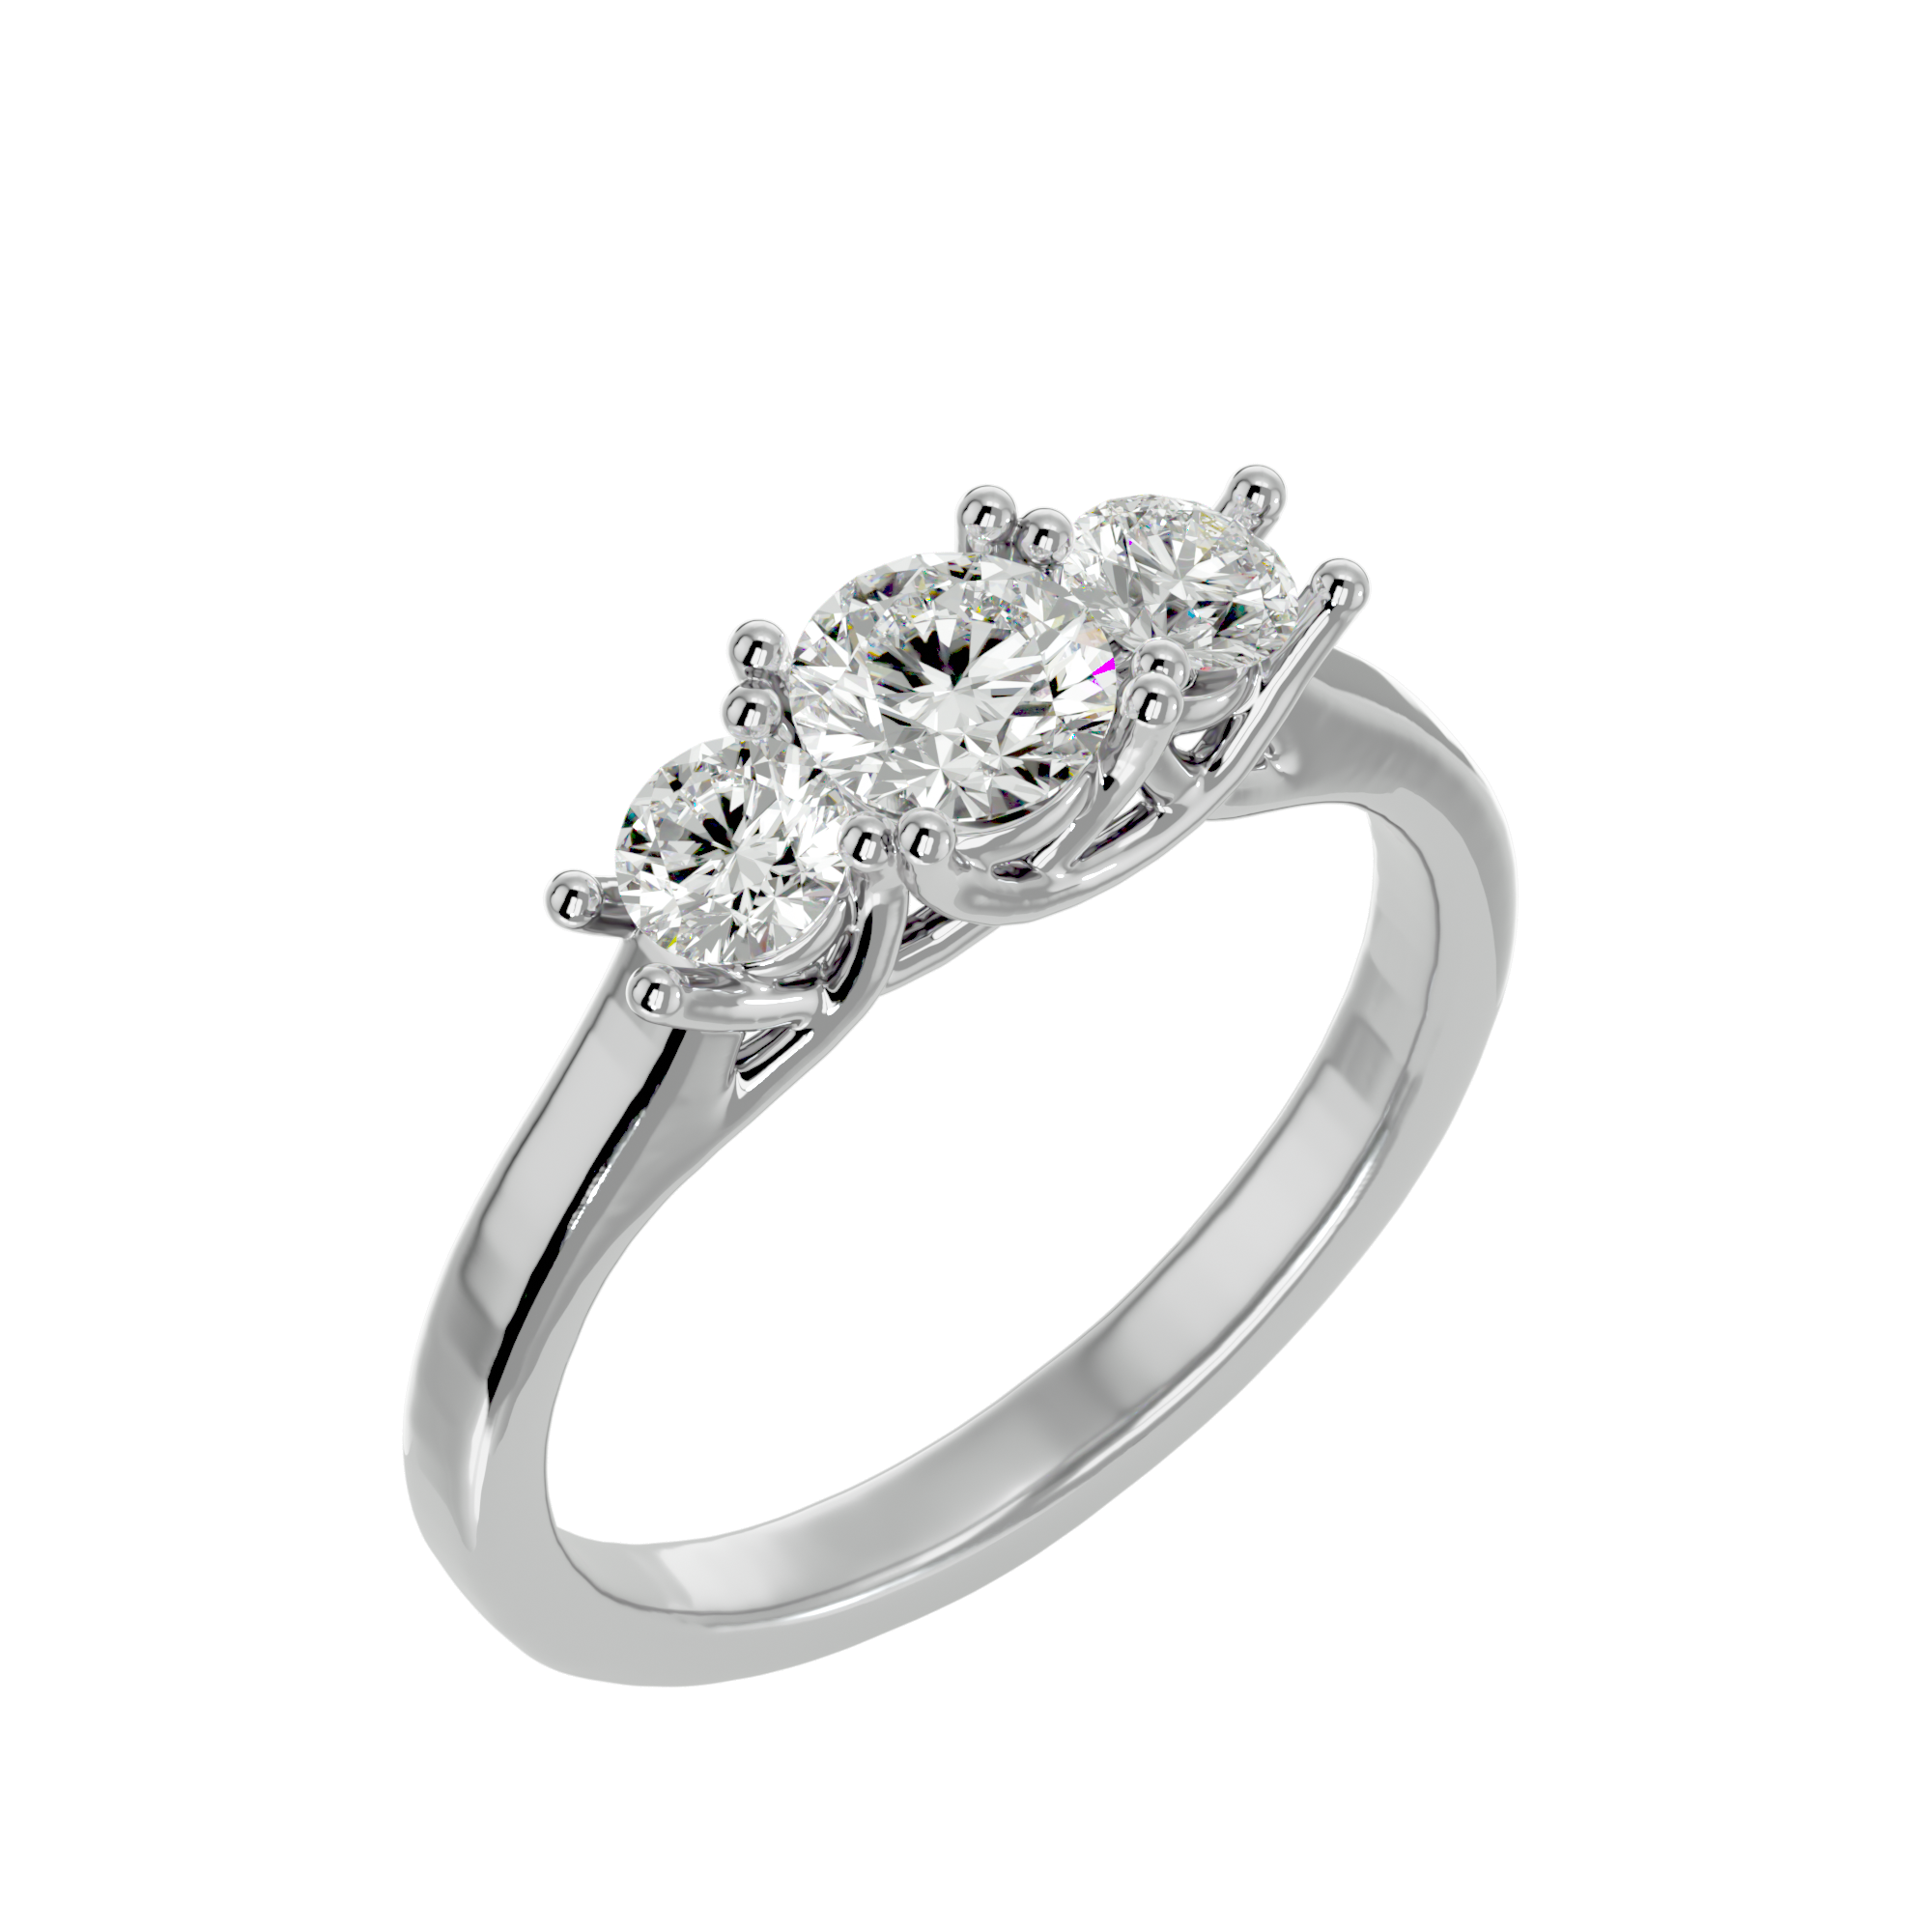 Splended Diamond Ring